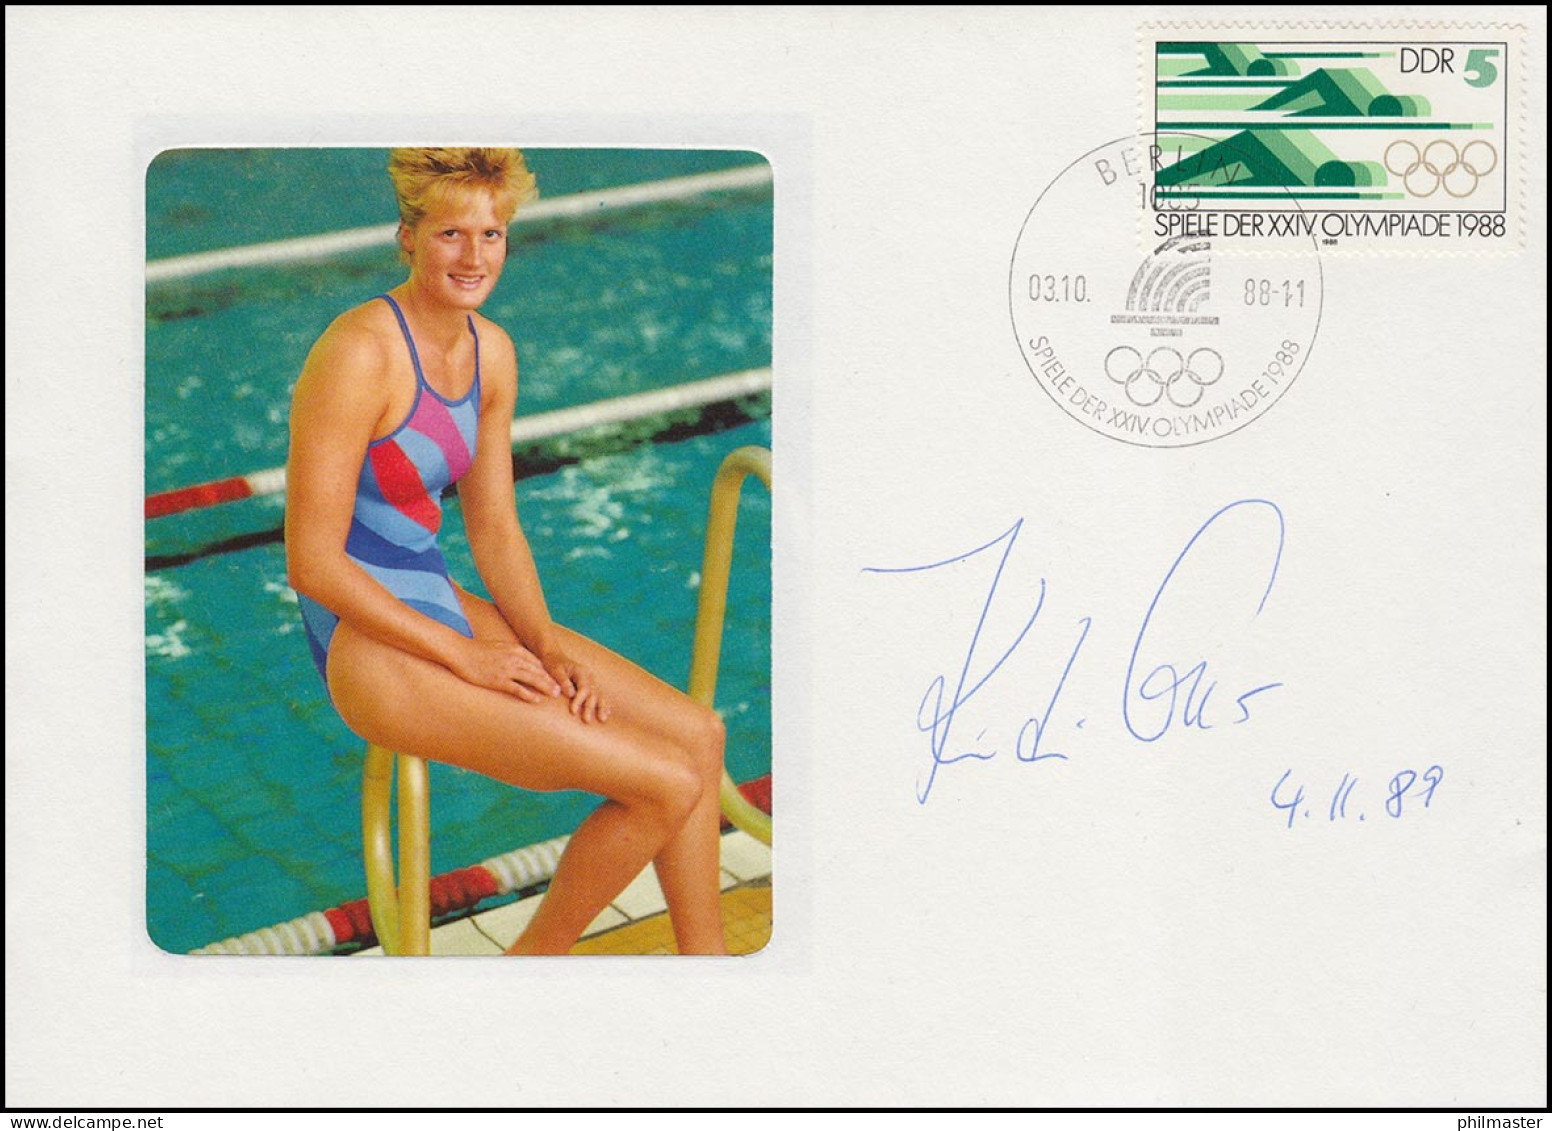 Autogramm Kristin Otto Auf Passendem Schmuck-Brief SSt Berlin Olympia 3.10.88 - Zwemmen